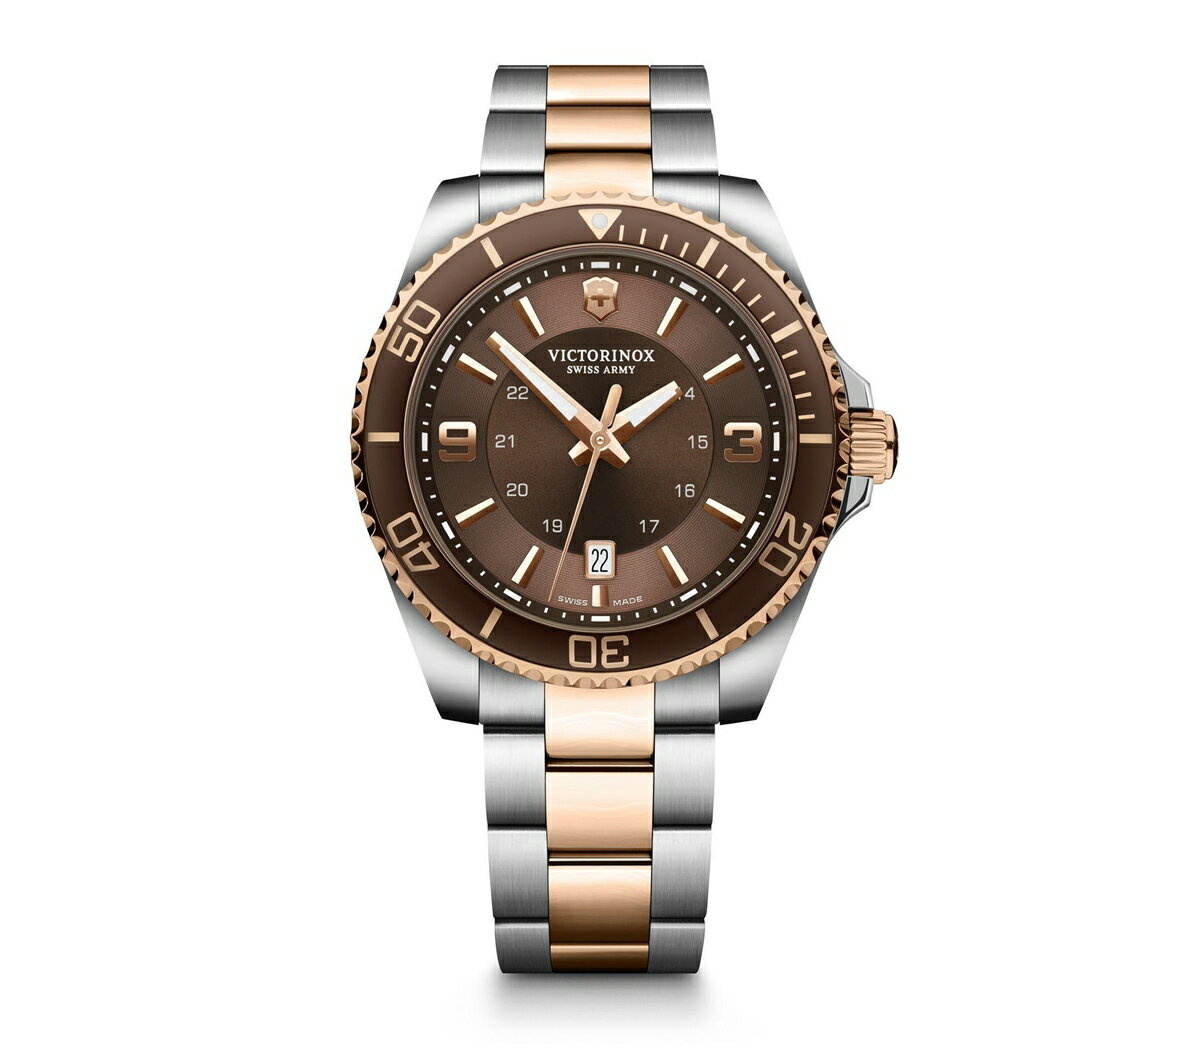 ビクトリノックス ビジネス腕時計 メンズ ビクトリノックス VICTORINOX 241951 マーベリック ラージ ブラウンダイヤル 国内正規品 腕時計